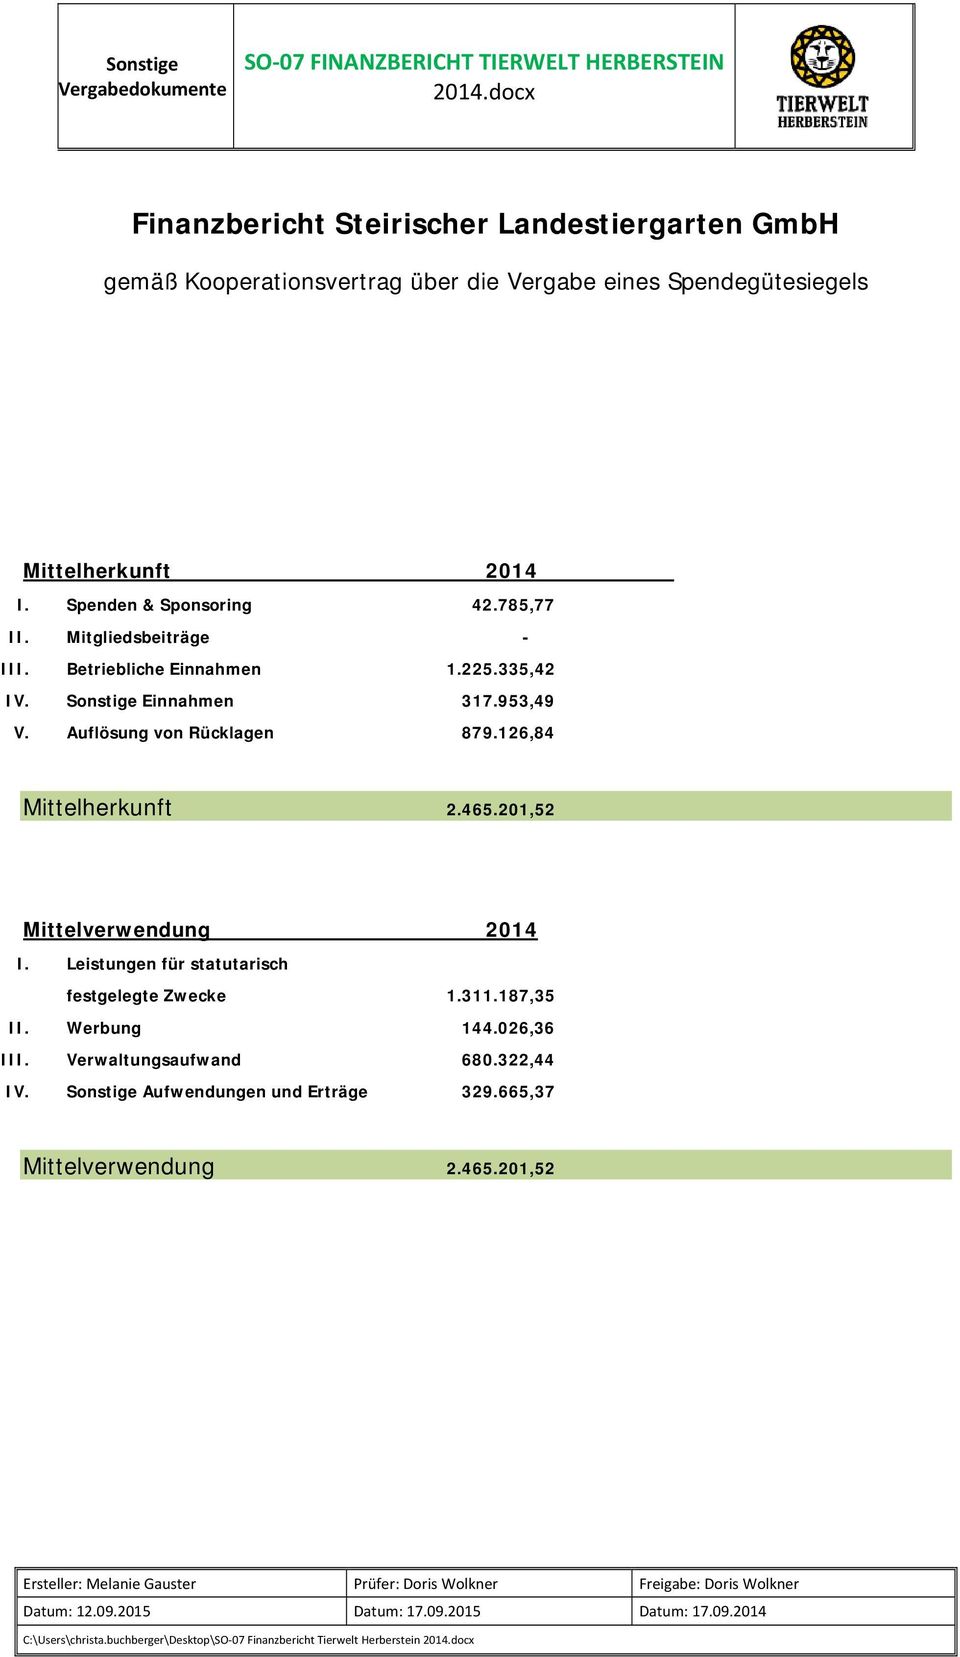 Auflösung von Rücklagen 879.126,84 Mittelherkunft 2.465.201,52 Mittelverwendung 2014 I. Leistungen für statutarisch festgelegte Zwecke 1.